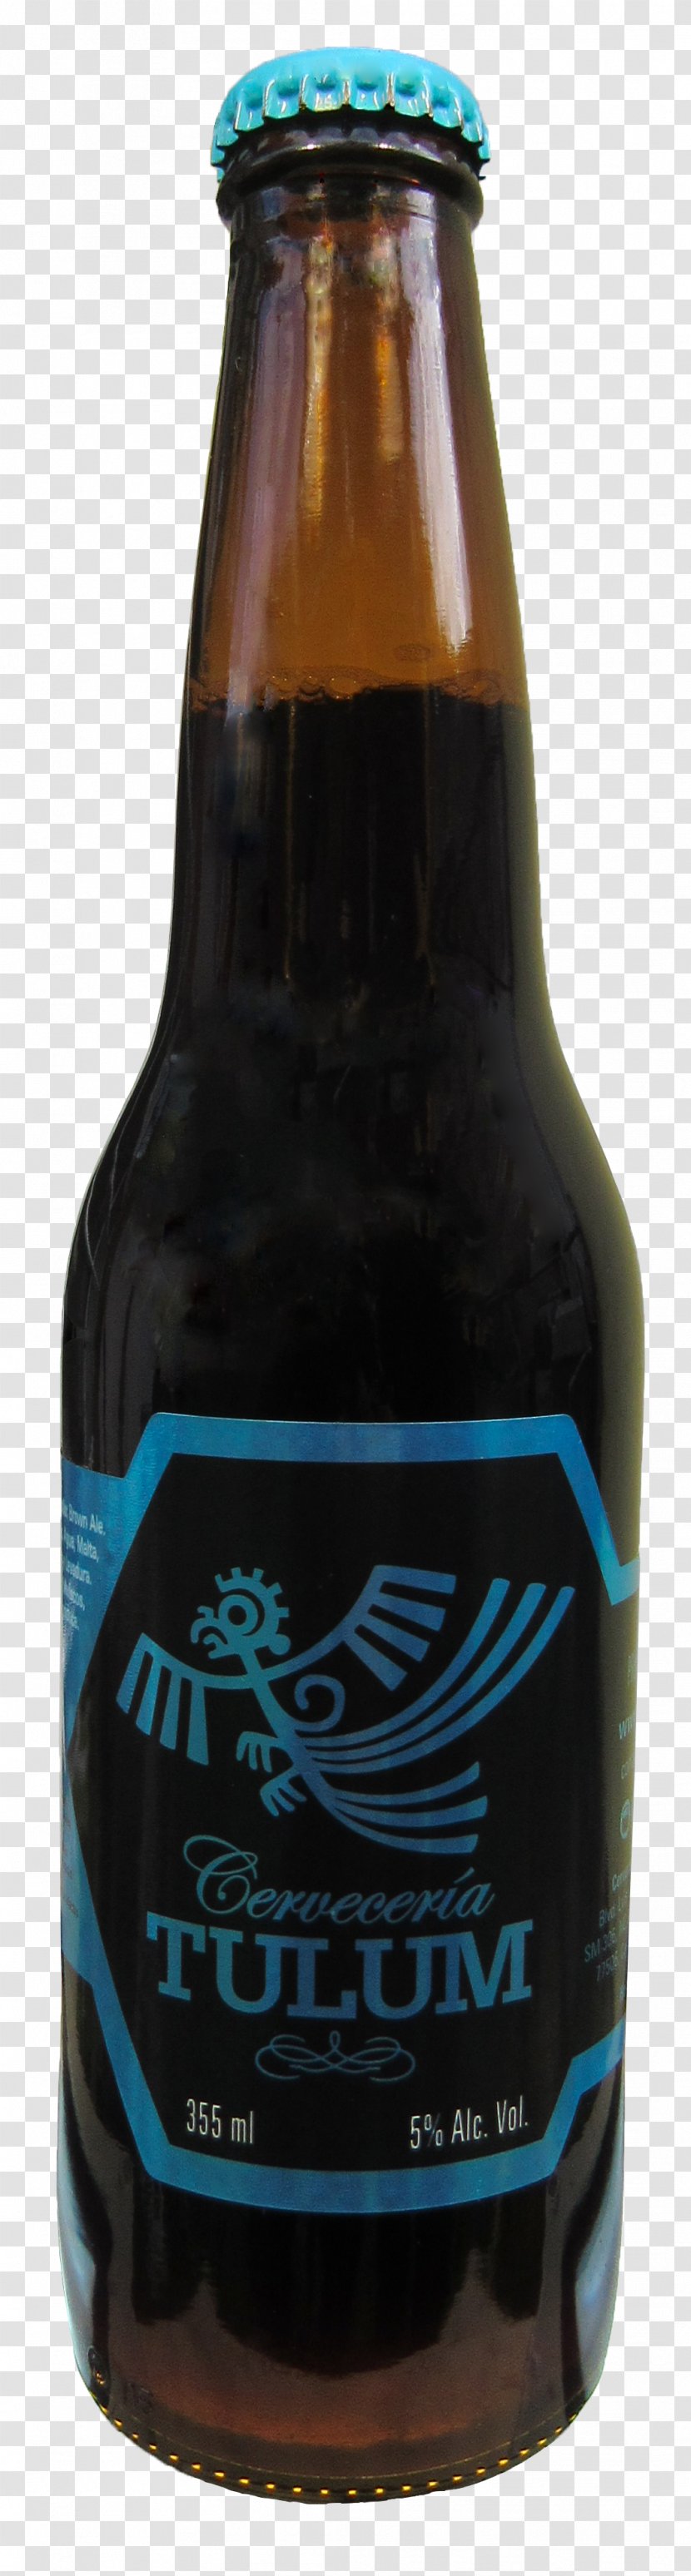 Ale Beer Bottle Wine Glass Transparent PNG